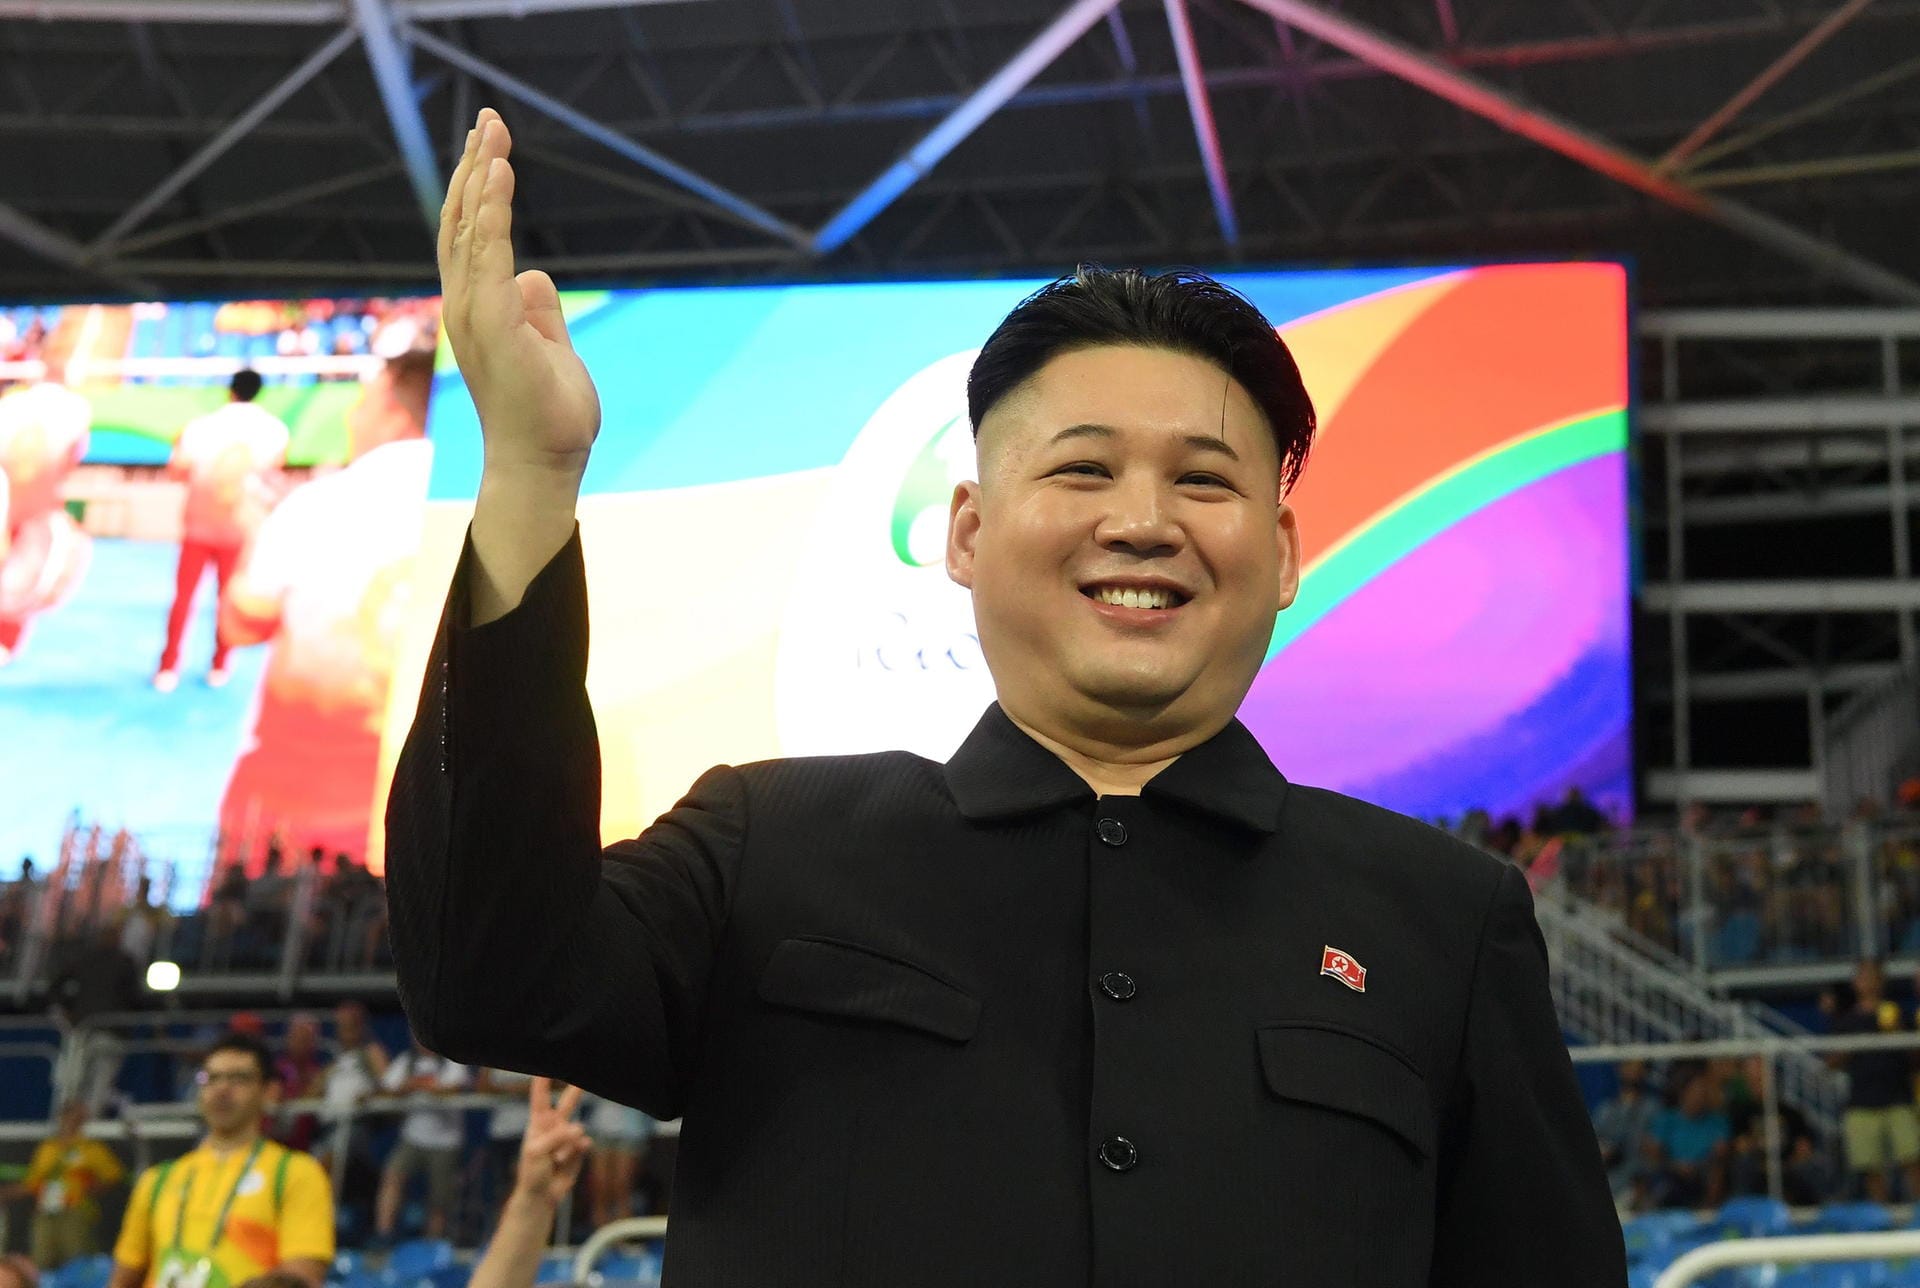 Sie wundern sich, warum Sie Kim Jong-Un noch nie so schön haben lächeln sehen, wie auf diesem Bild? Das liegt einfach daran, dass dies gar nicht der nordkoreanische Diktator persönlich ist. Stattdessen lächelt hier ein sehr gut performendes Double in die Kamera lächelt.